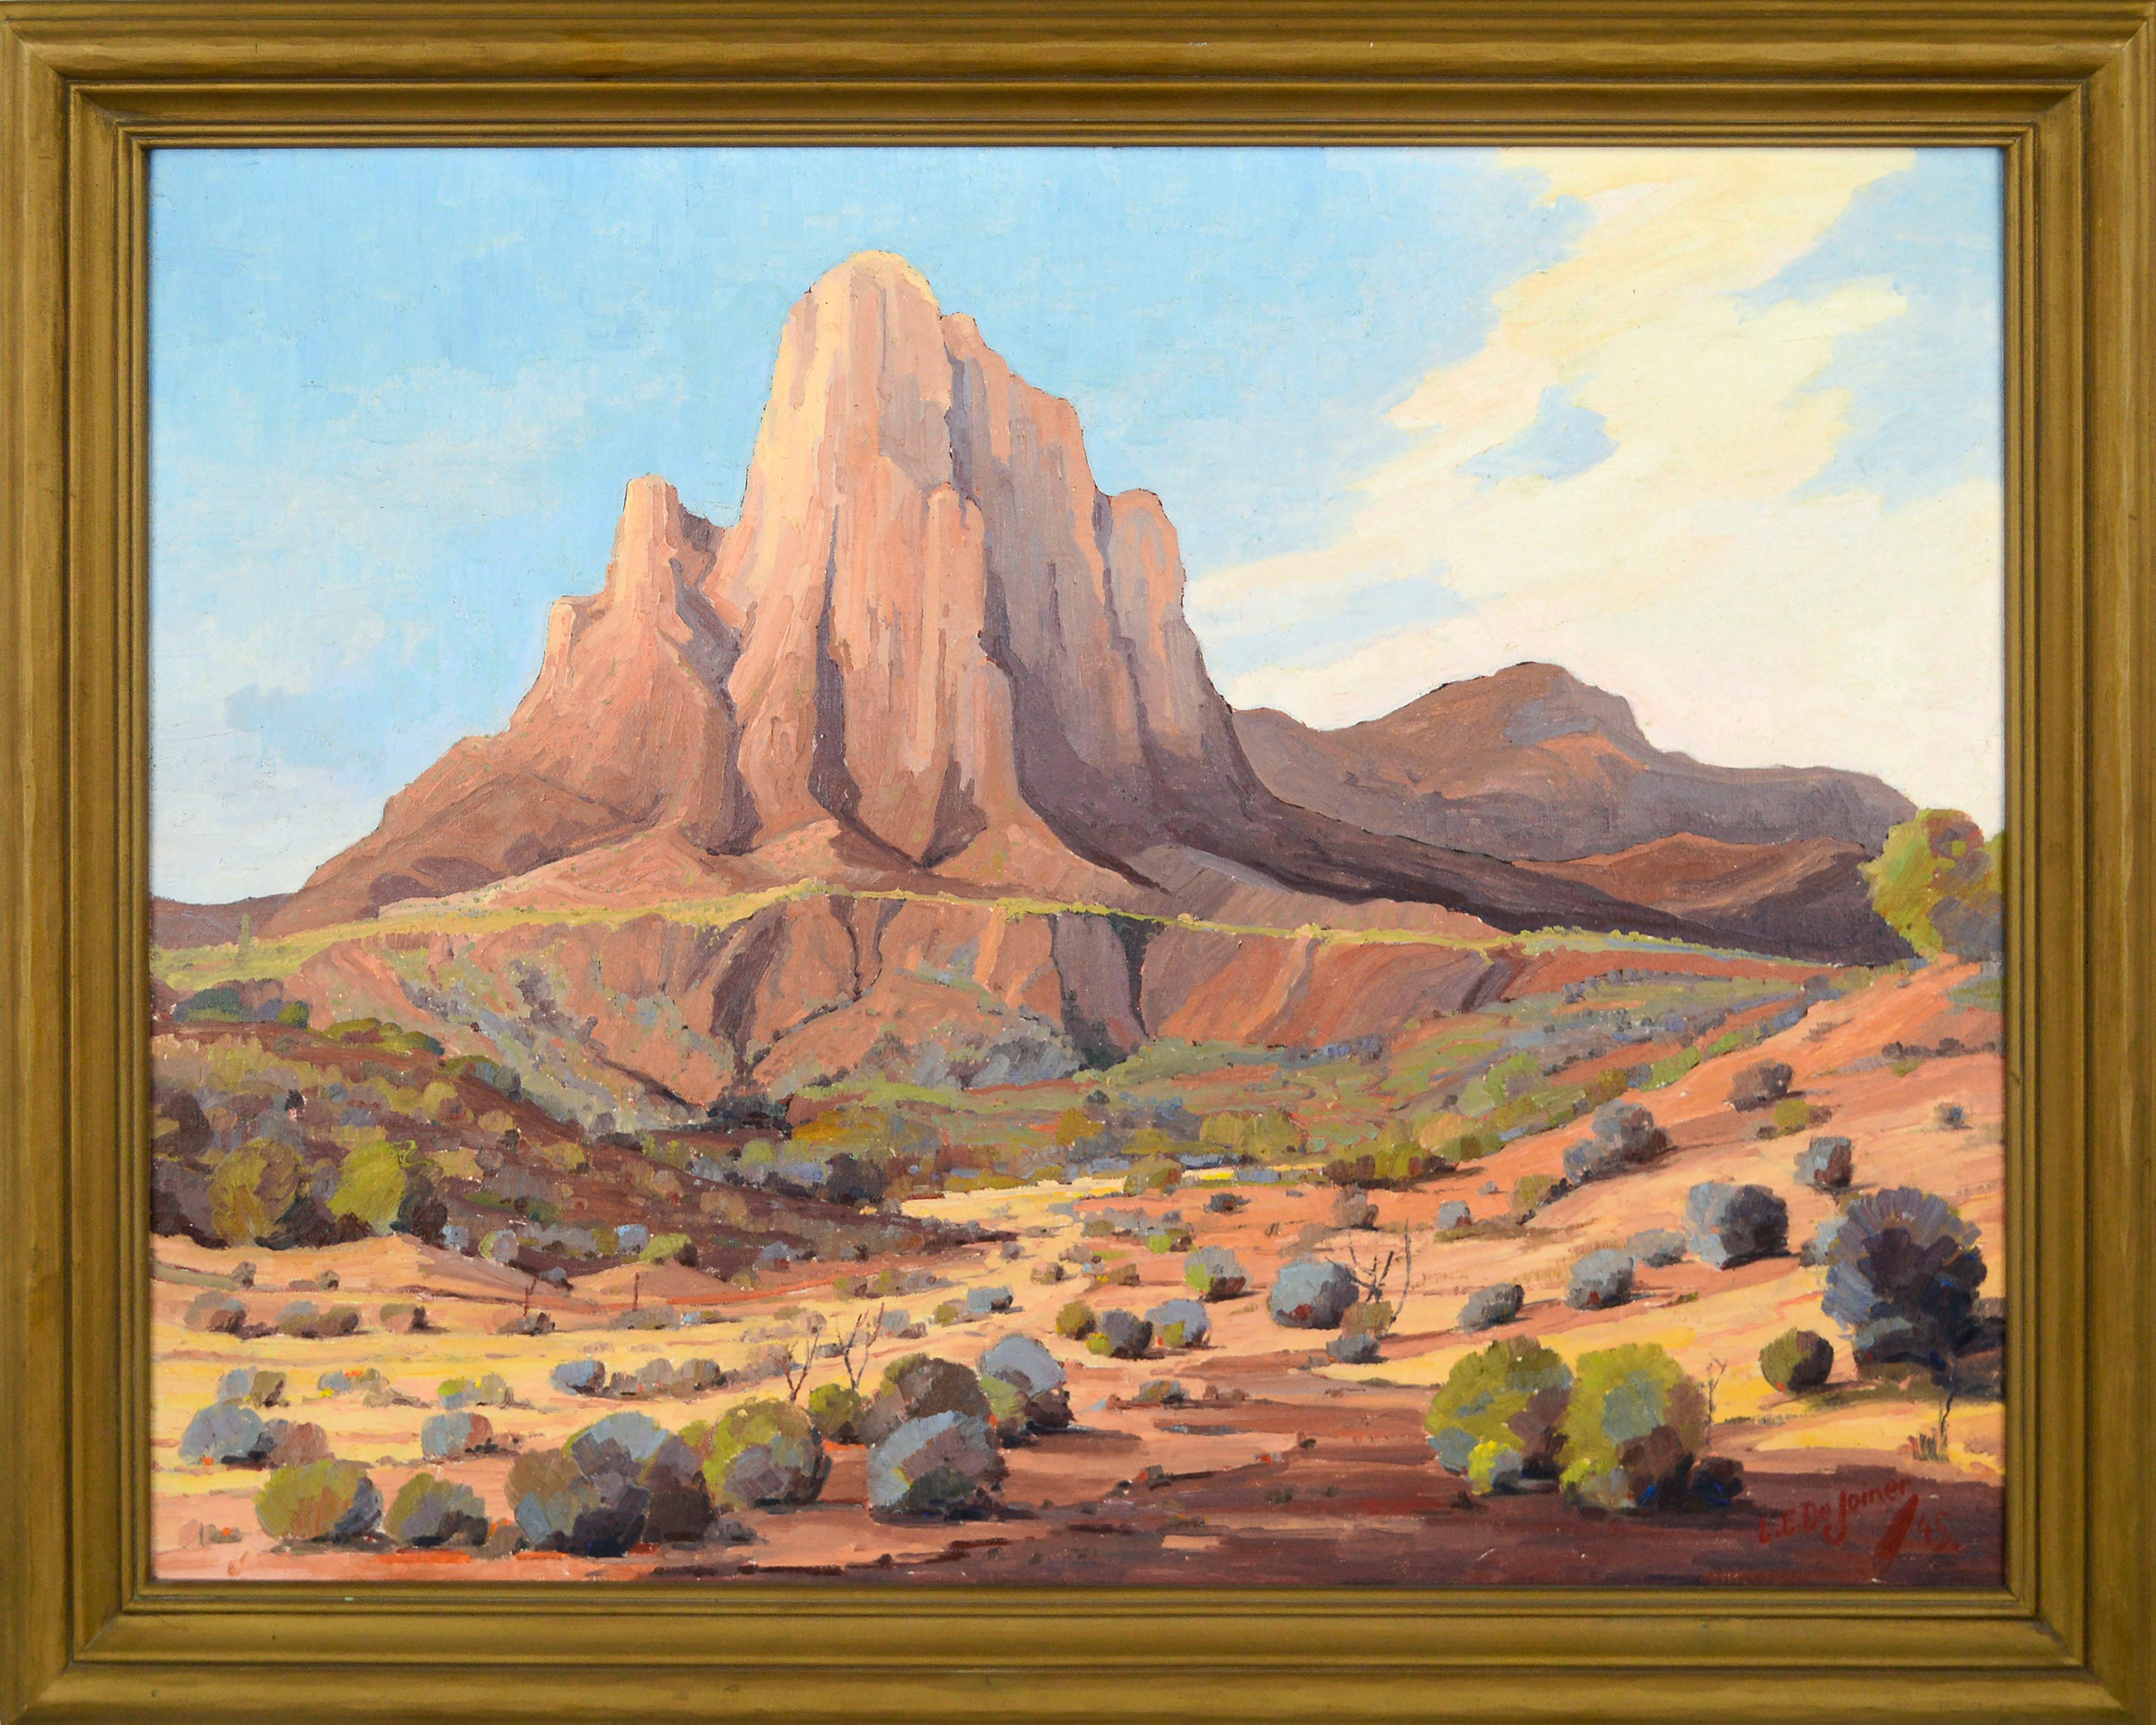 Luther Evans Dejoiner Landscape Painting - Picacho Peak, Arizona 1945 - Mid Century Southwest Desert Landscape by Dejoiner